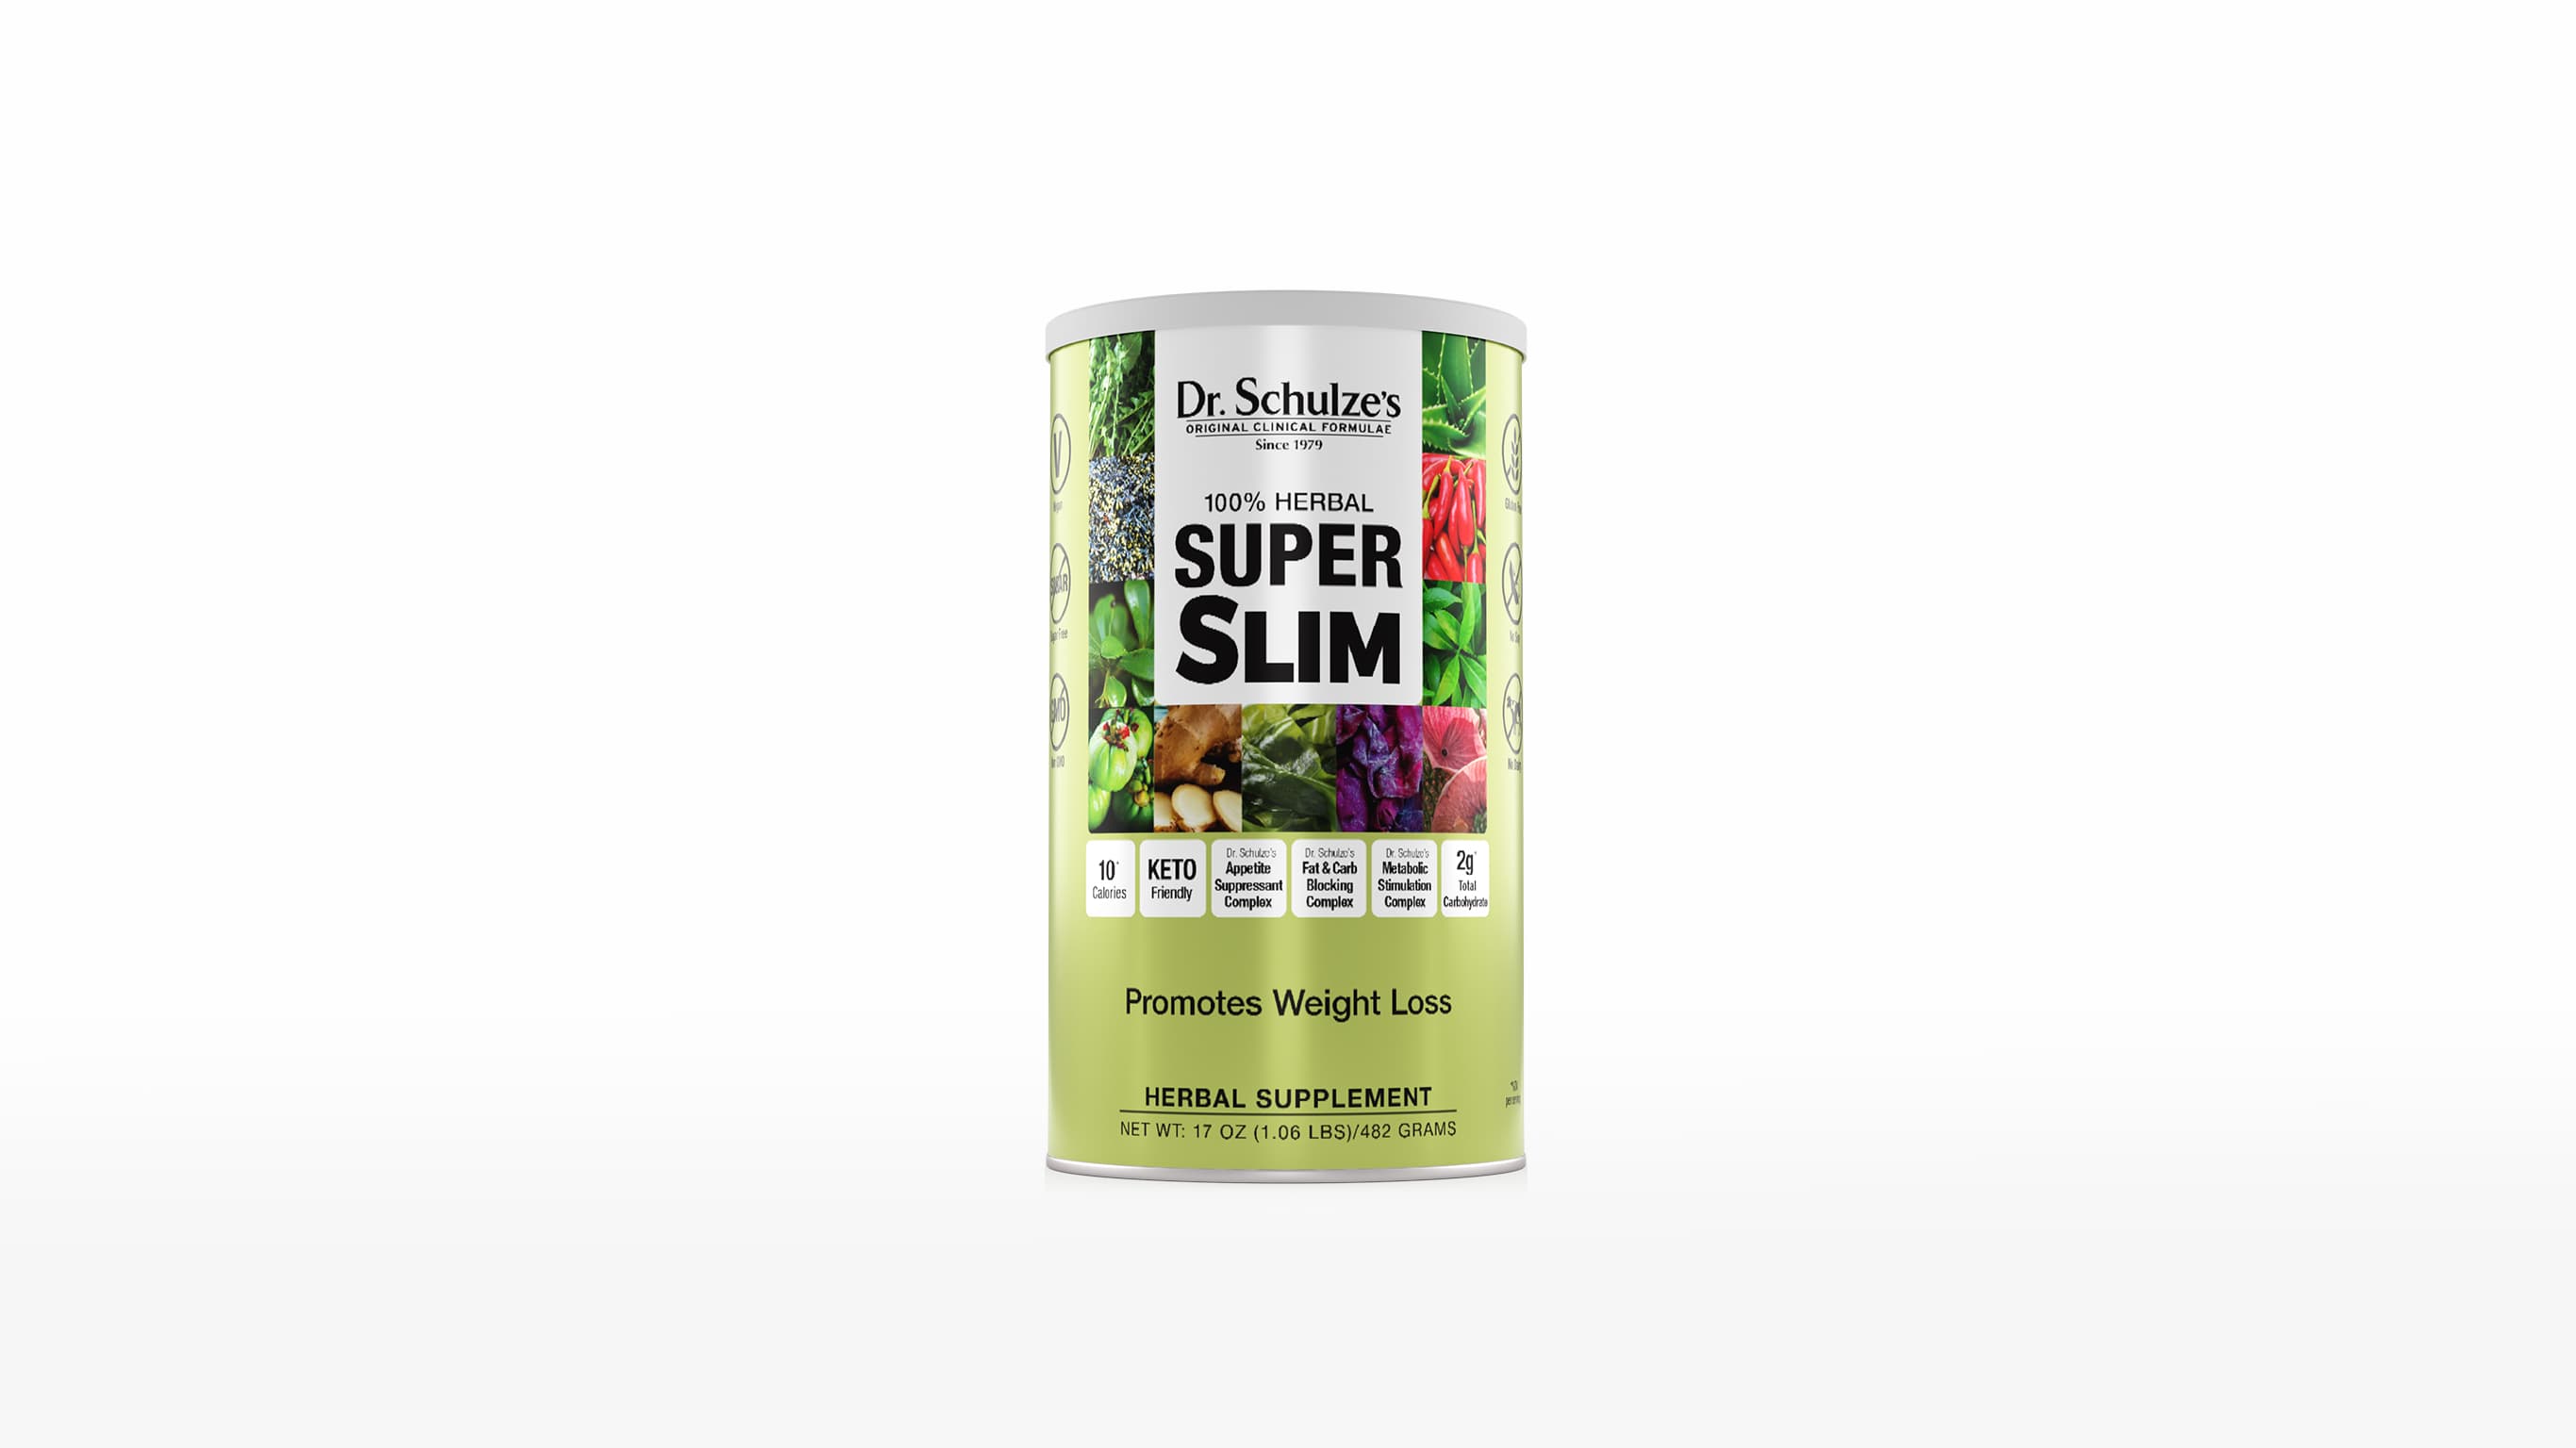 100% Natural Herbal Super Slim Tea, Quick Slim Body Reduce Fat